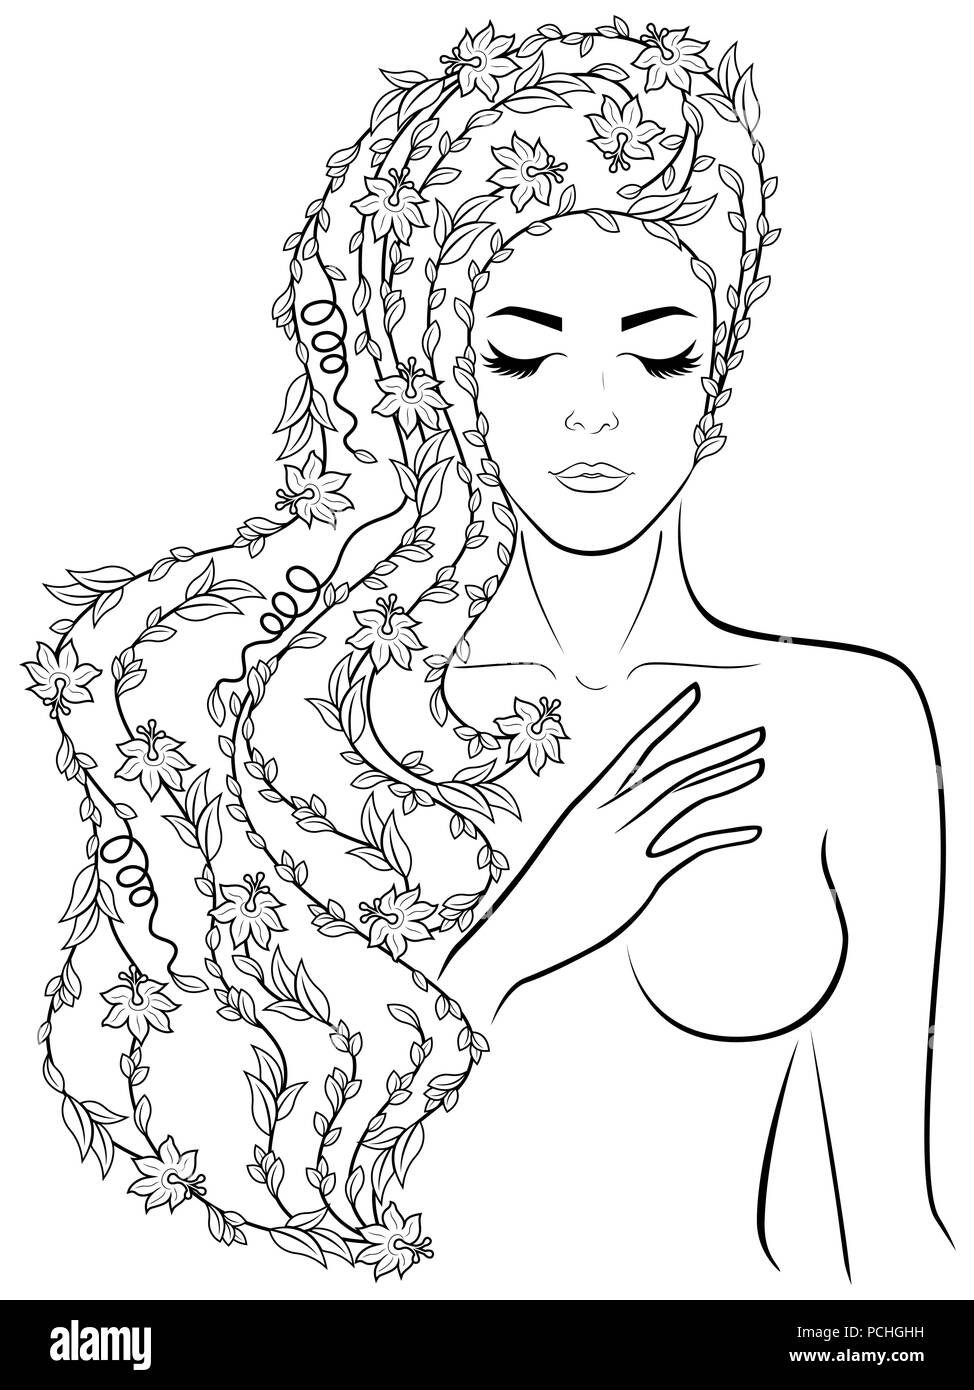 Contorno nero di impressionante affascinante ragazza con i fiori in un lussuoso dei capelli ondulati su uno sfondo bianco, mano disegno vettoriale Illustrazione Vettoriale